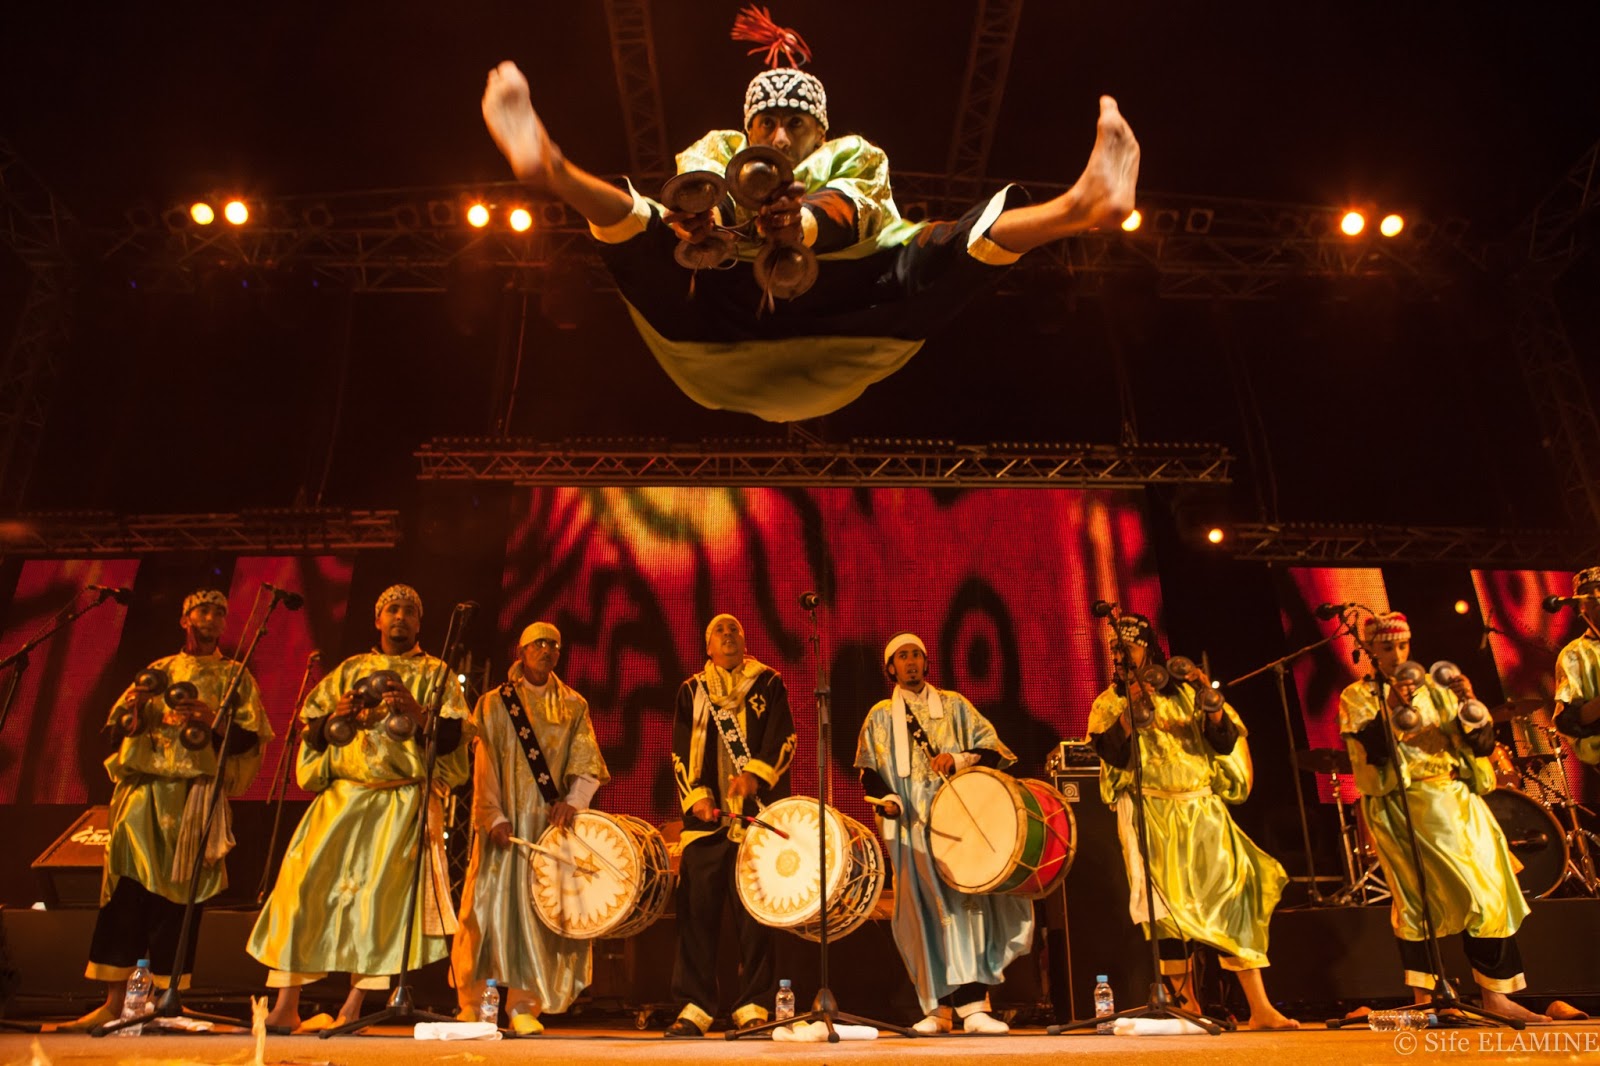  Национальный фестиваль народных искусств в Марракеше